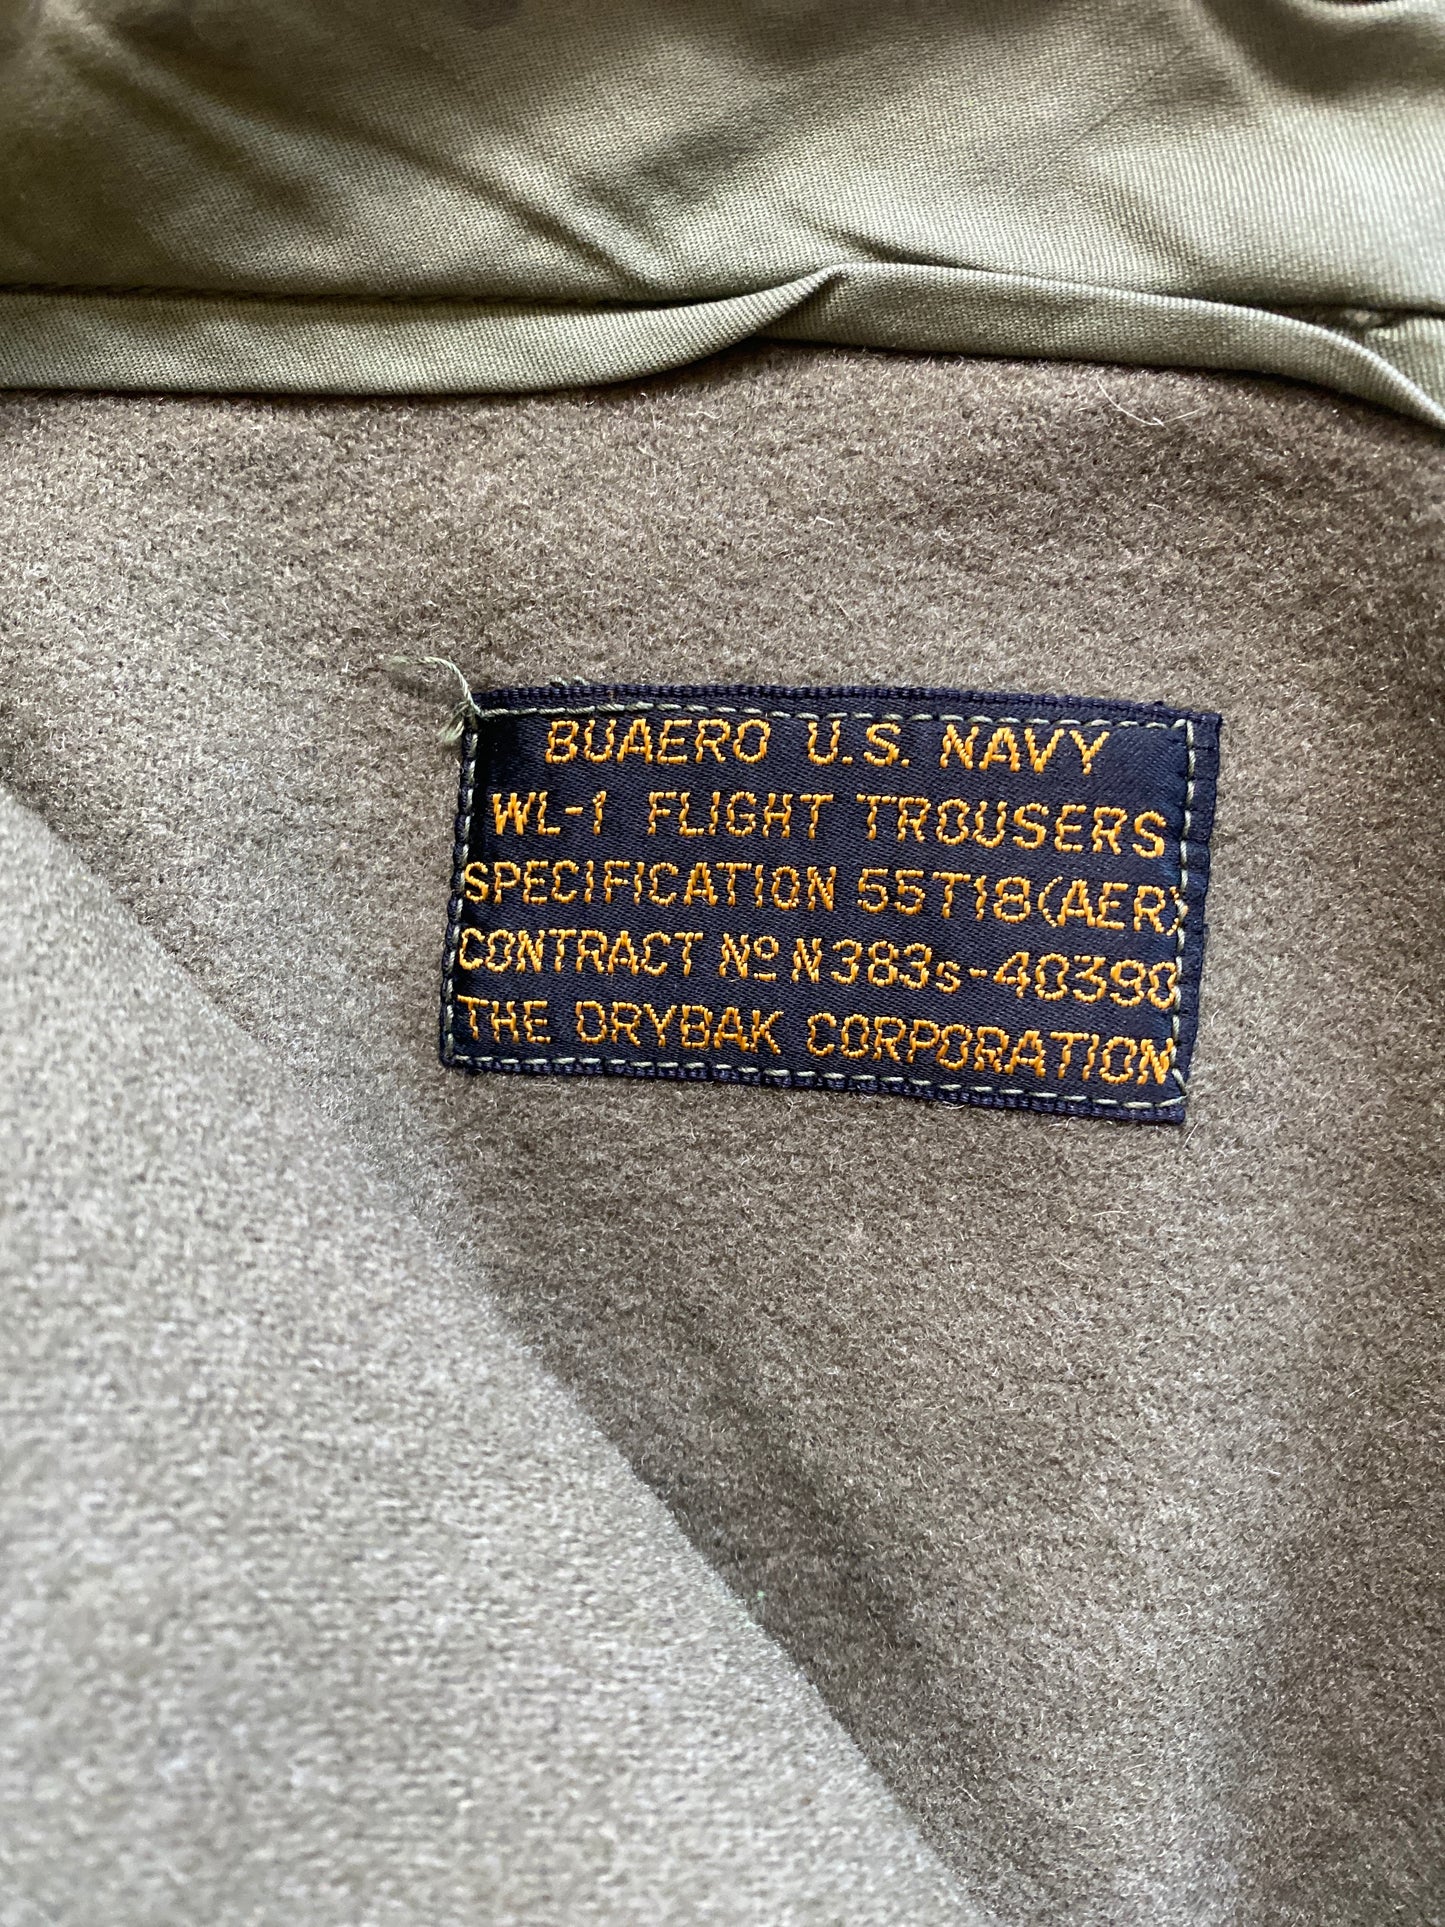 WWII BuAero Drybak WL-1 Flight Trousers Size 31W x 30L